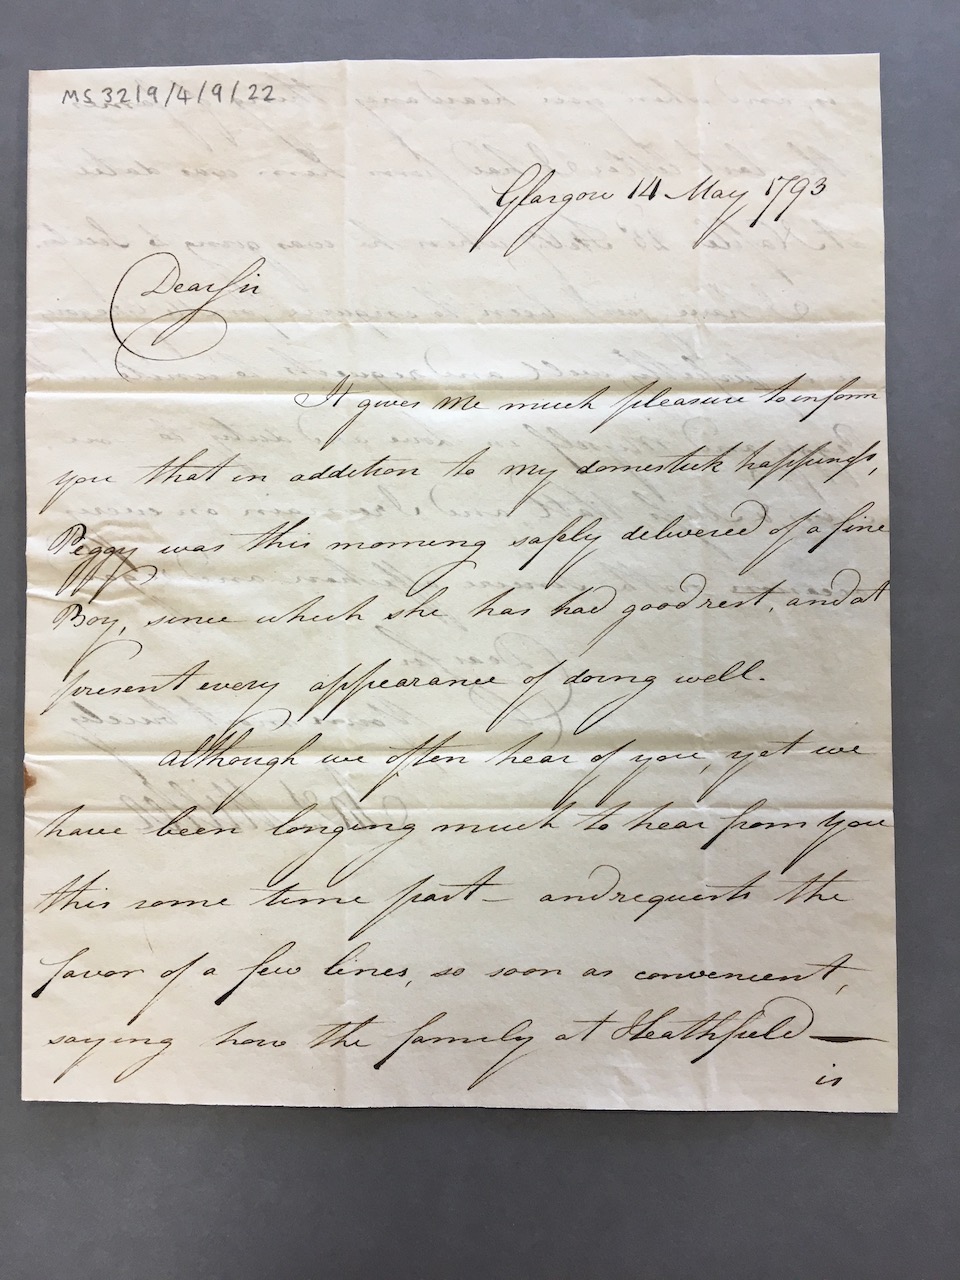 Image #1 of letter: James Miller to James Watt (II), 14 May 1793